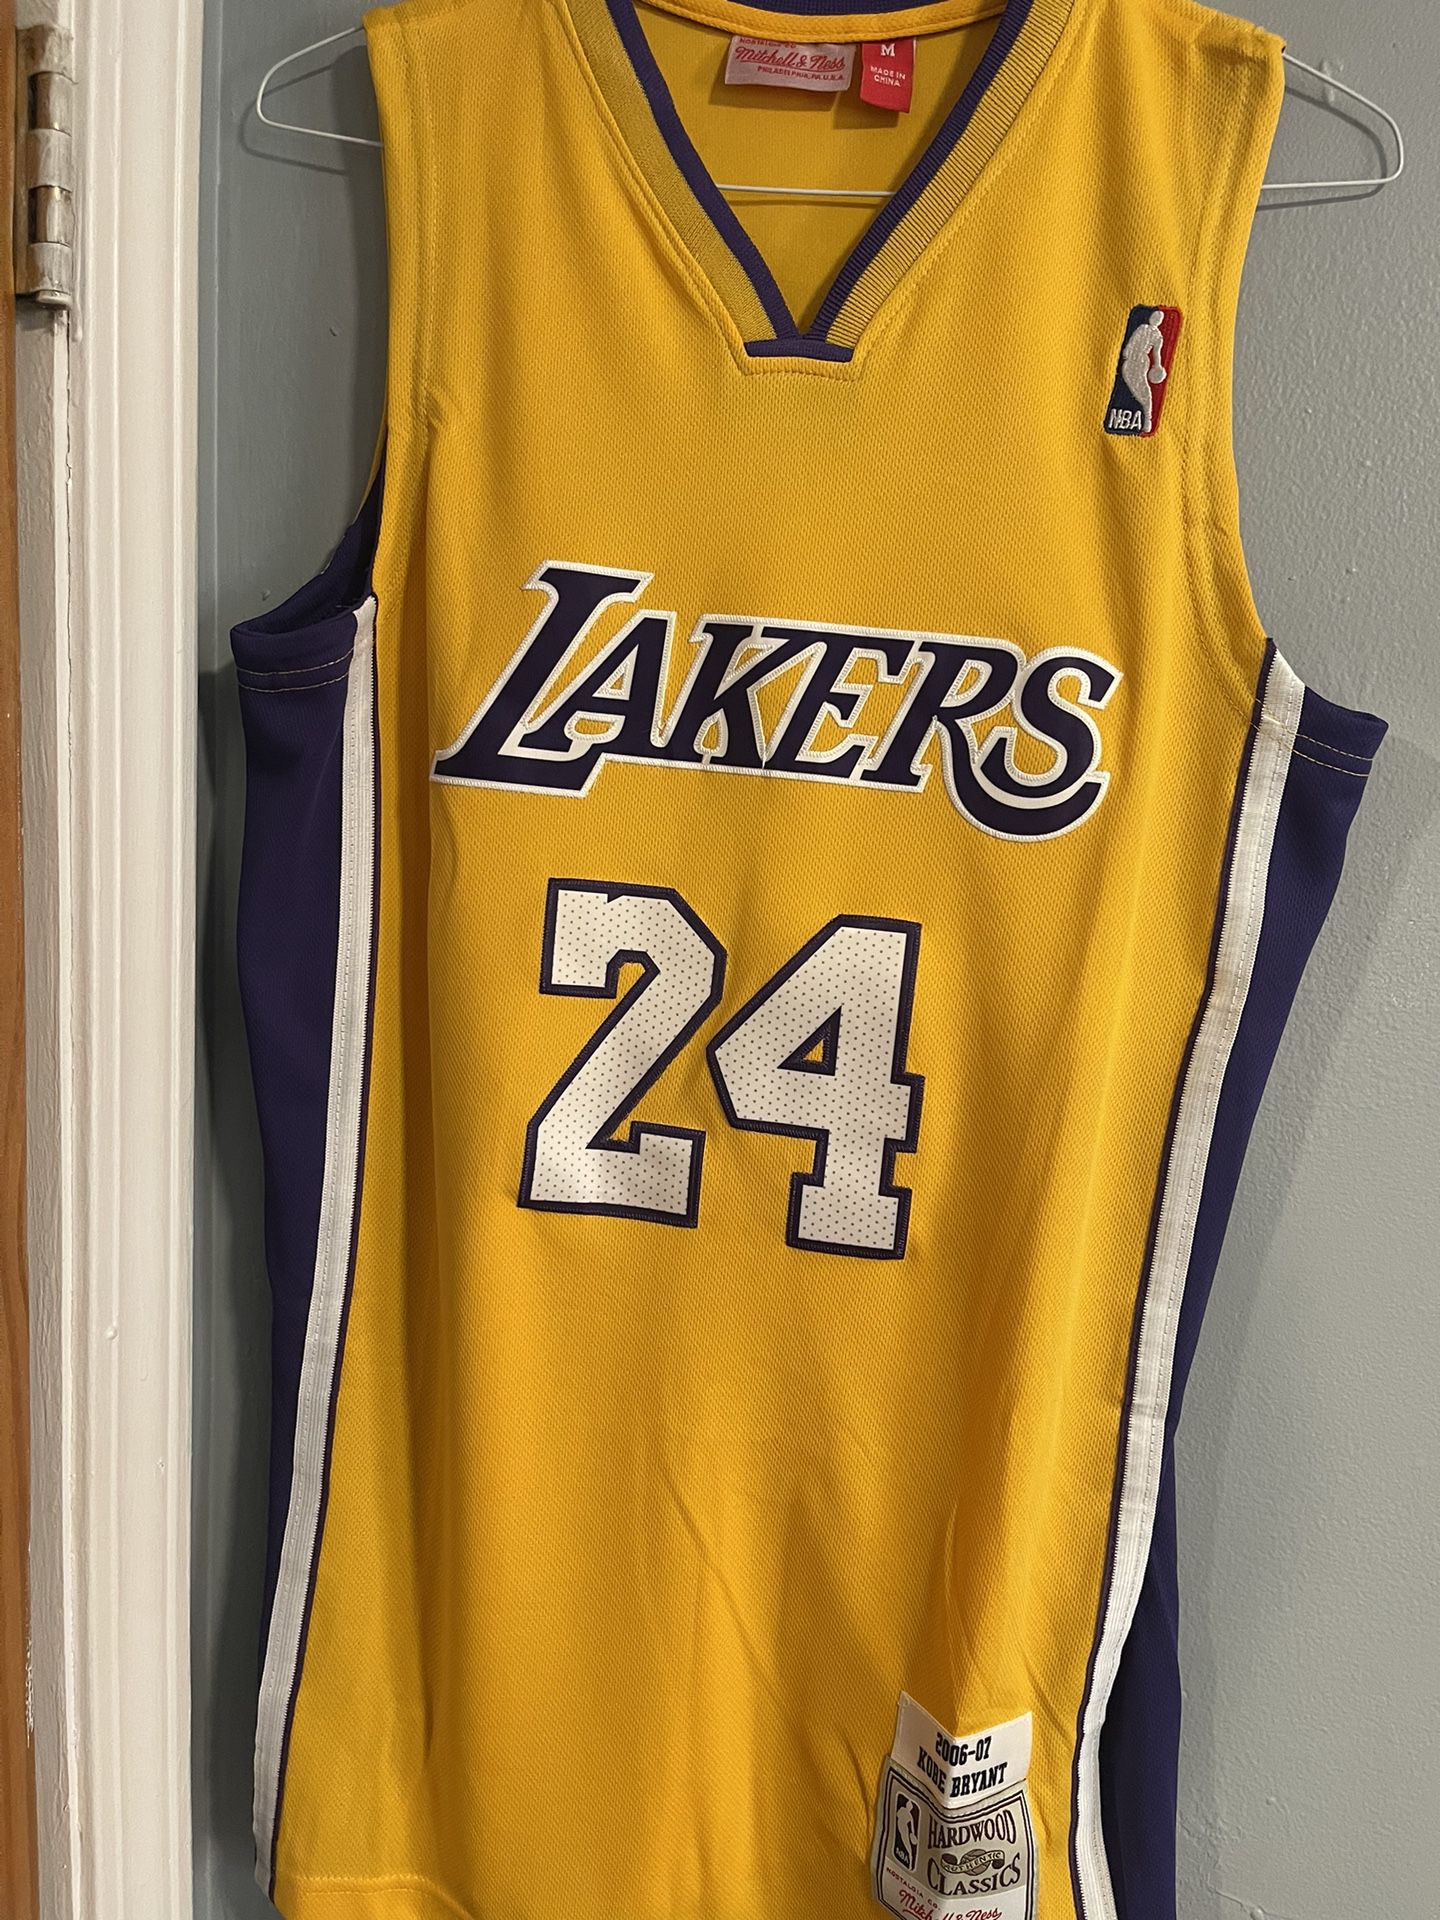 Kobe Bryant Black Mamba Jersey Lakers #24 XL